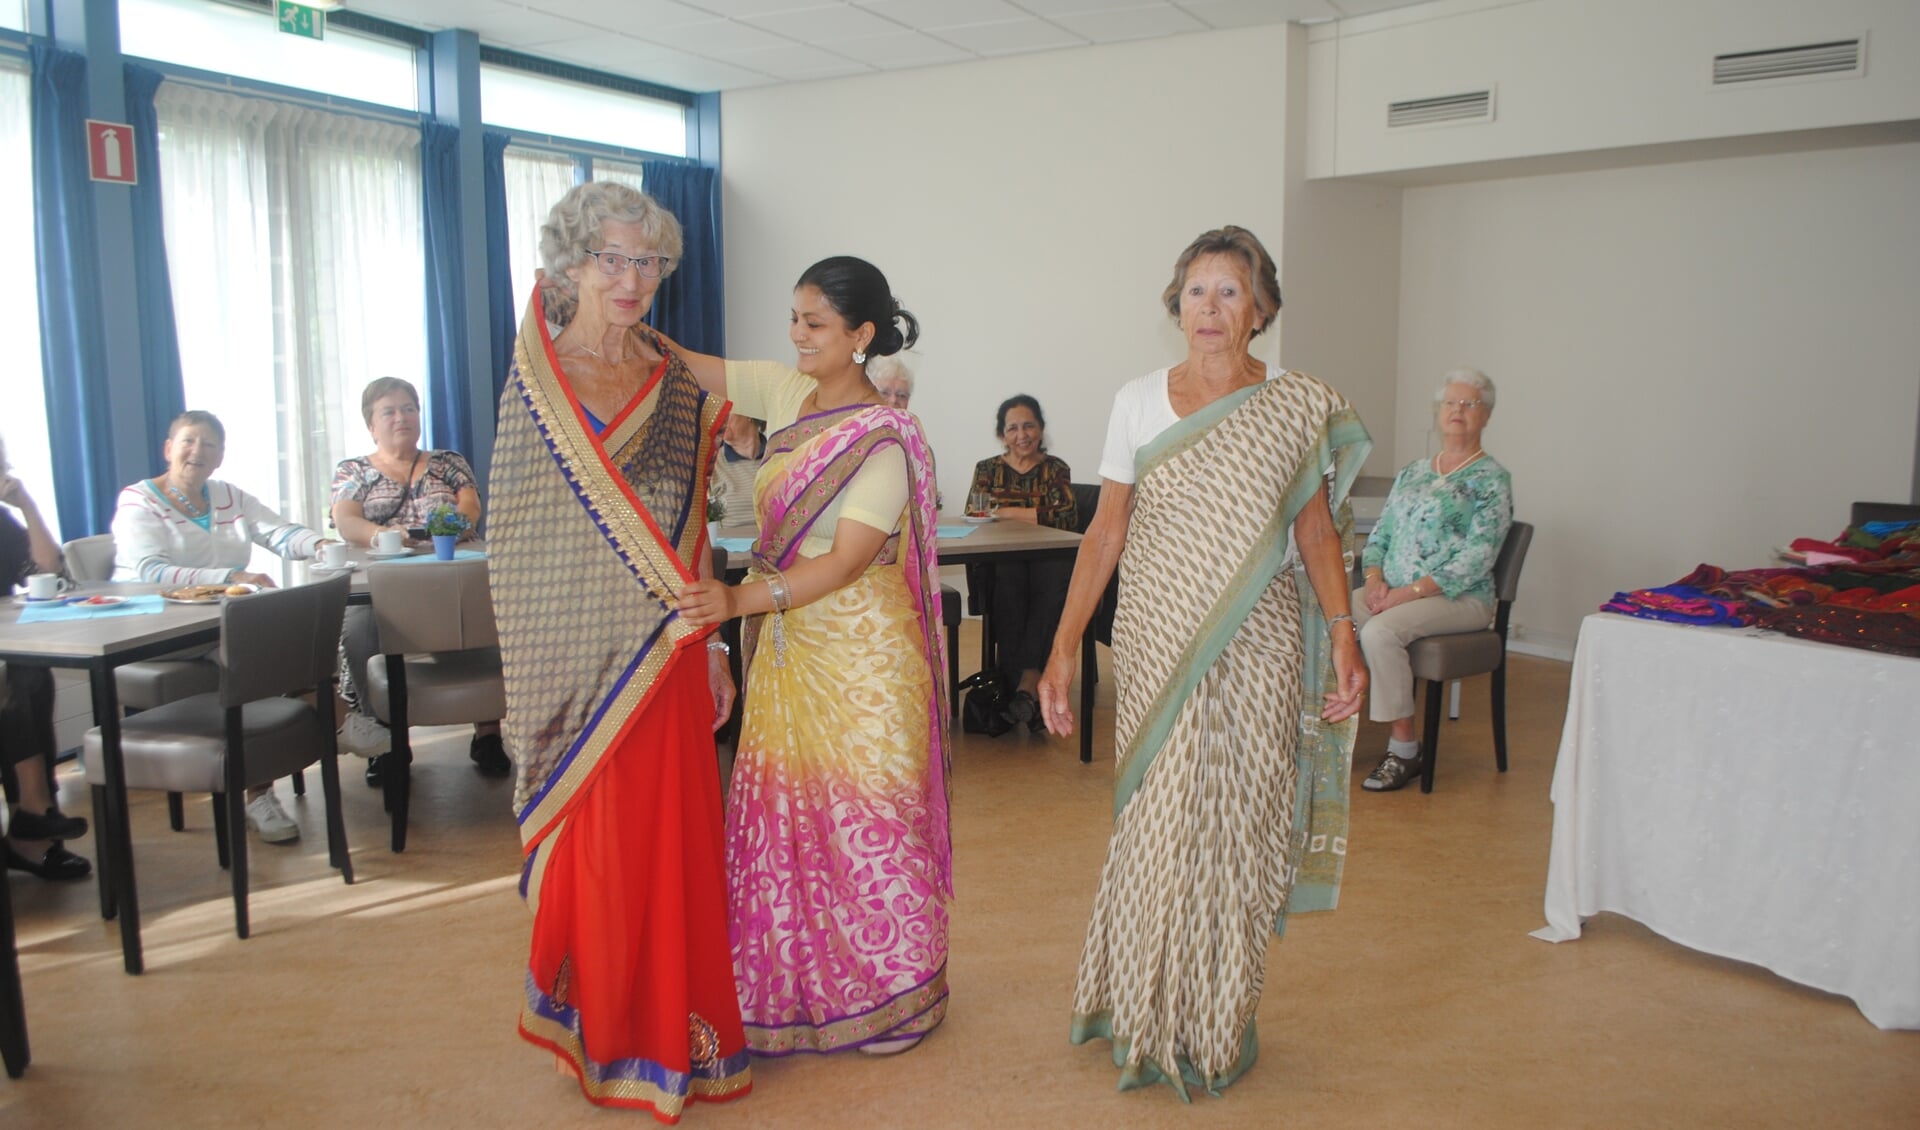 Mannequin Radika uit Alphen toonde hoe een sari om het lichaam wordt gedrapeerd. | Tekst&Foto: Nelleke Thissen